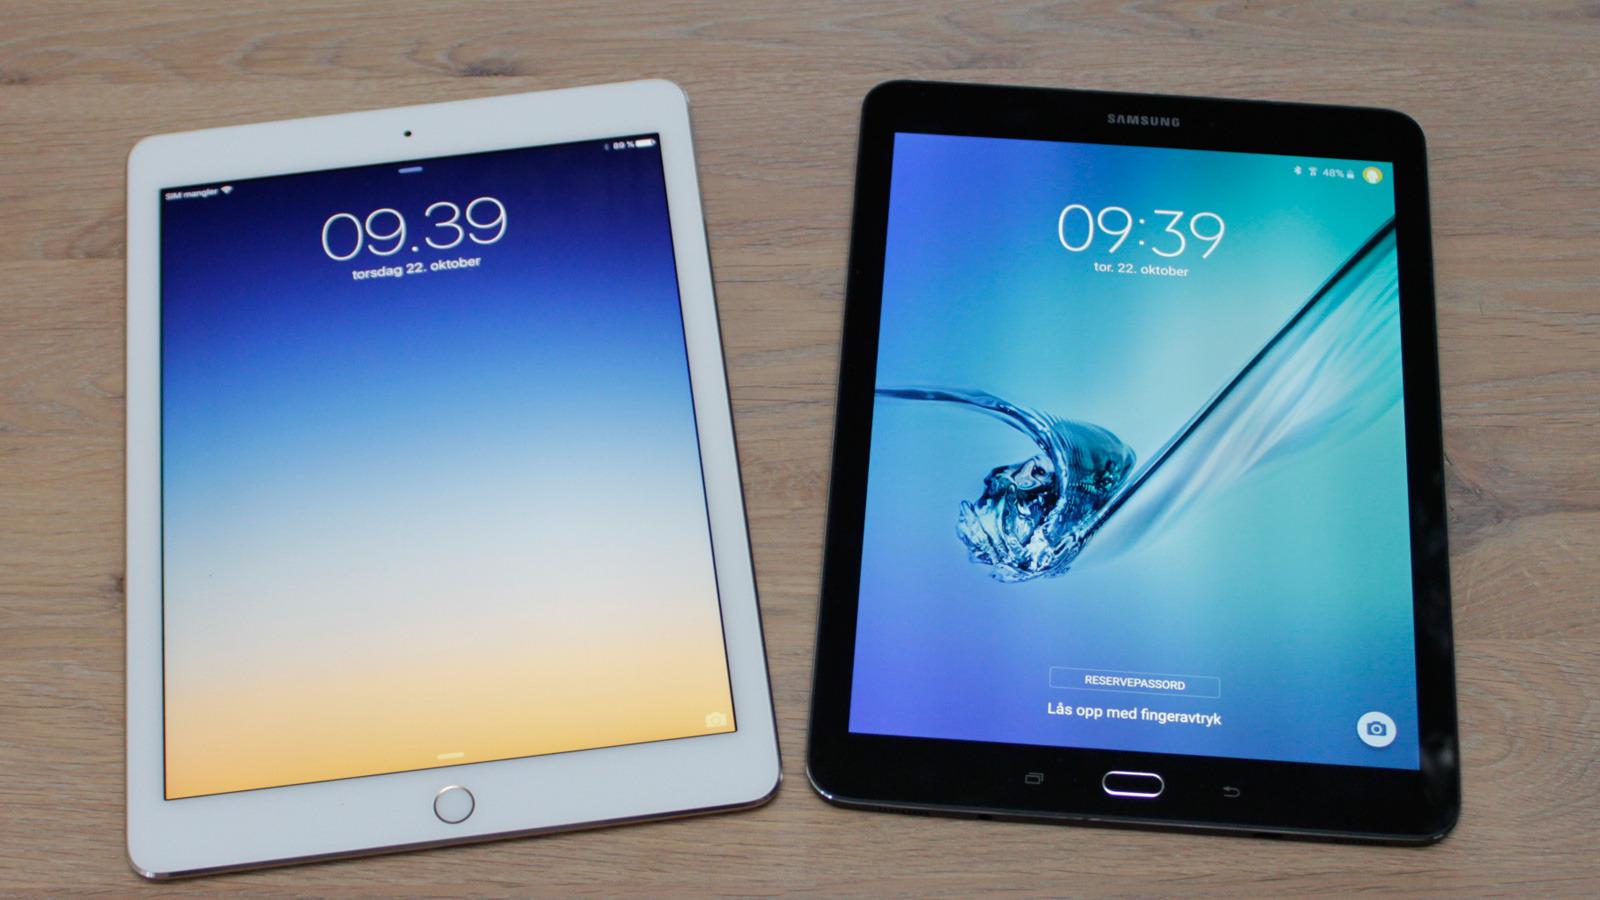 Helt ulike er de ikke, iPad Air 2 til venstre og Galaxy Tab S2 til høyre. Foto: Espen Irwing Swang, Tek.no